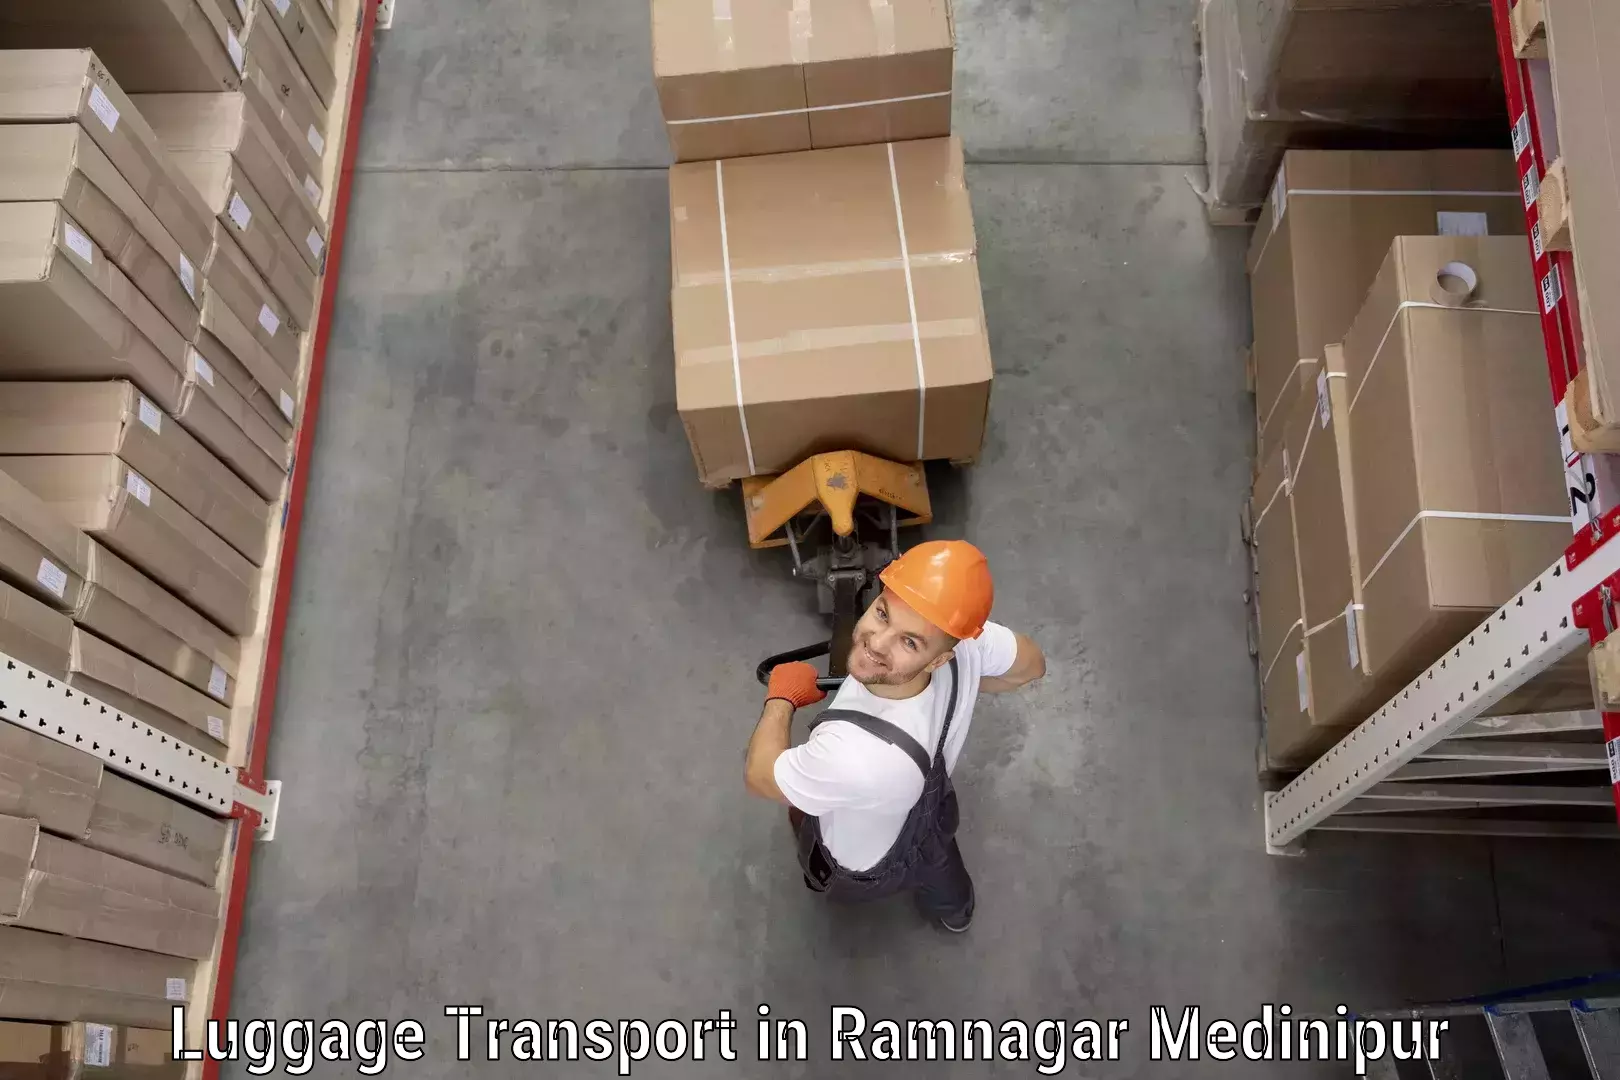 Luggage transport deals in Ramnagar Medinipur